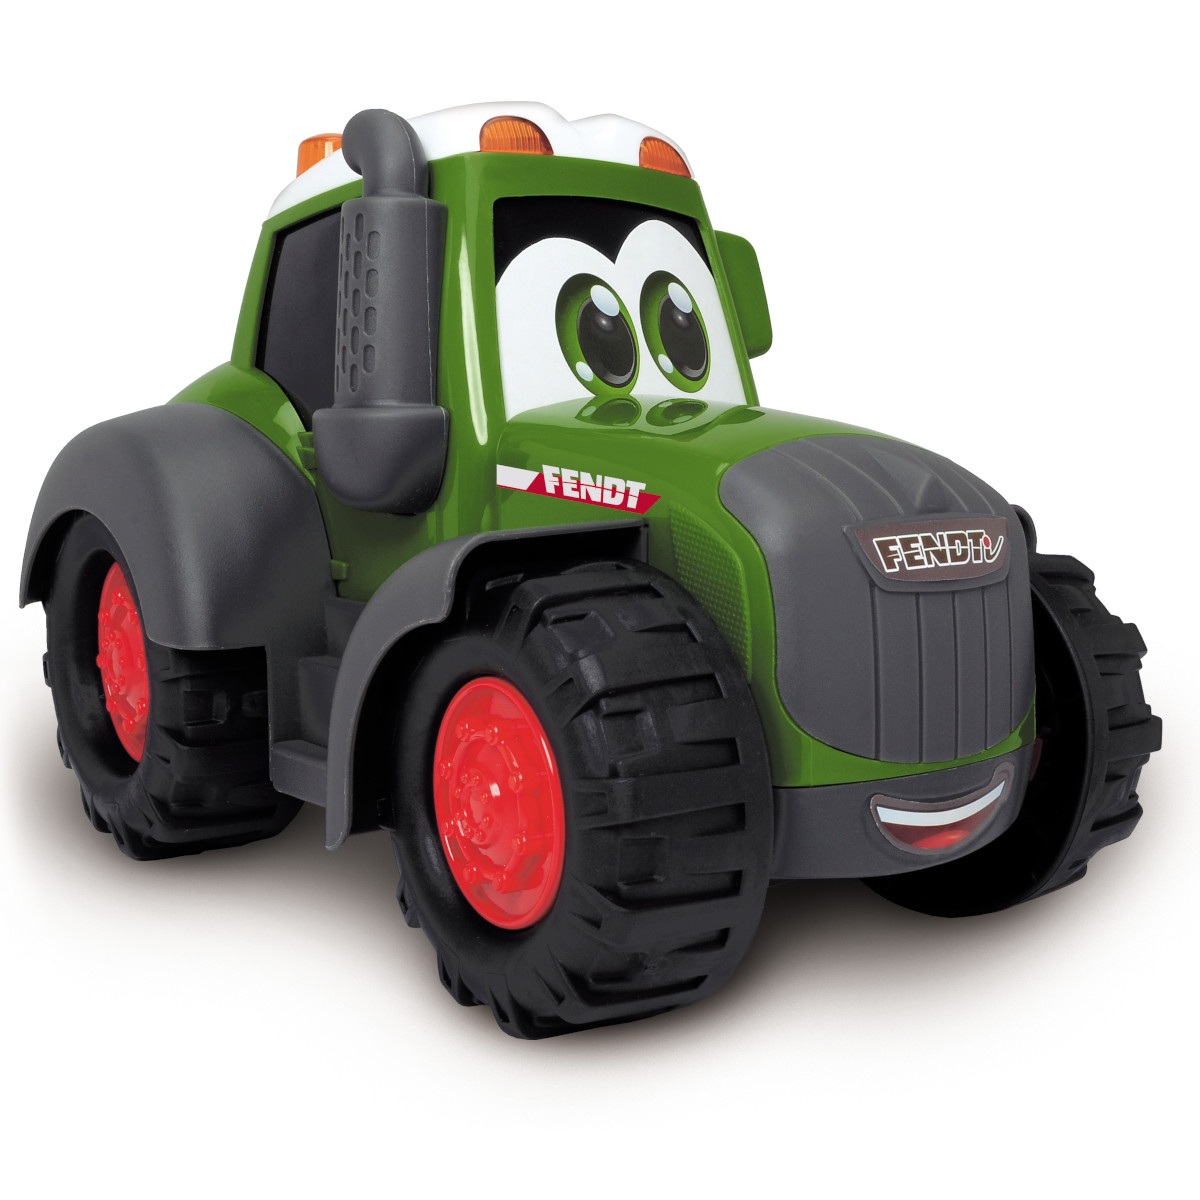 Dickie ABC Freddy Fruit Traktor ab 22,49 €